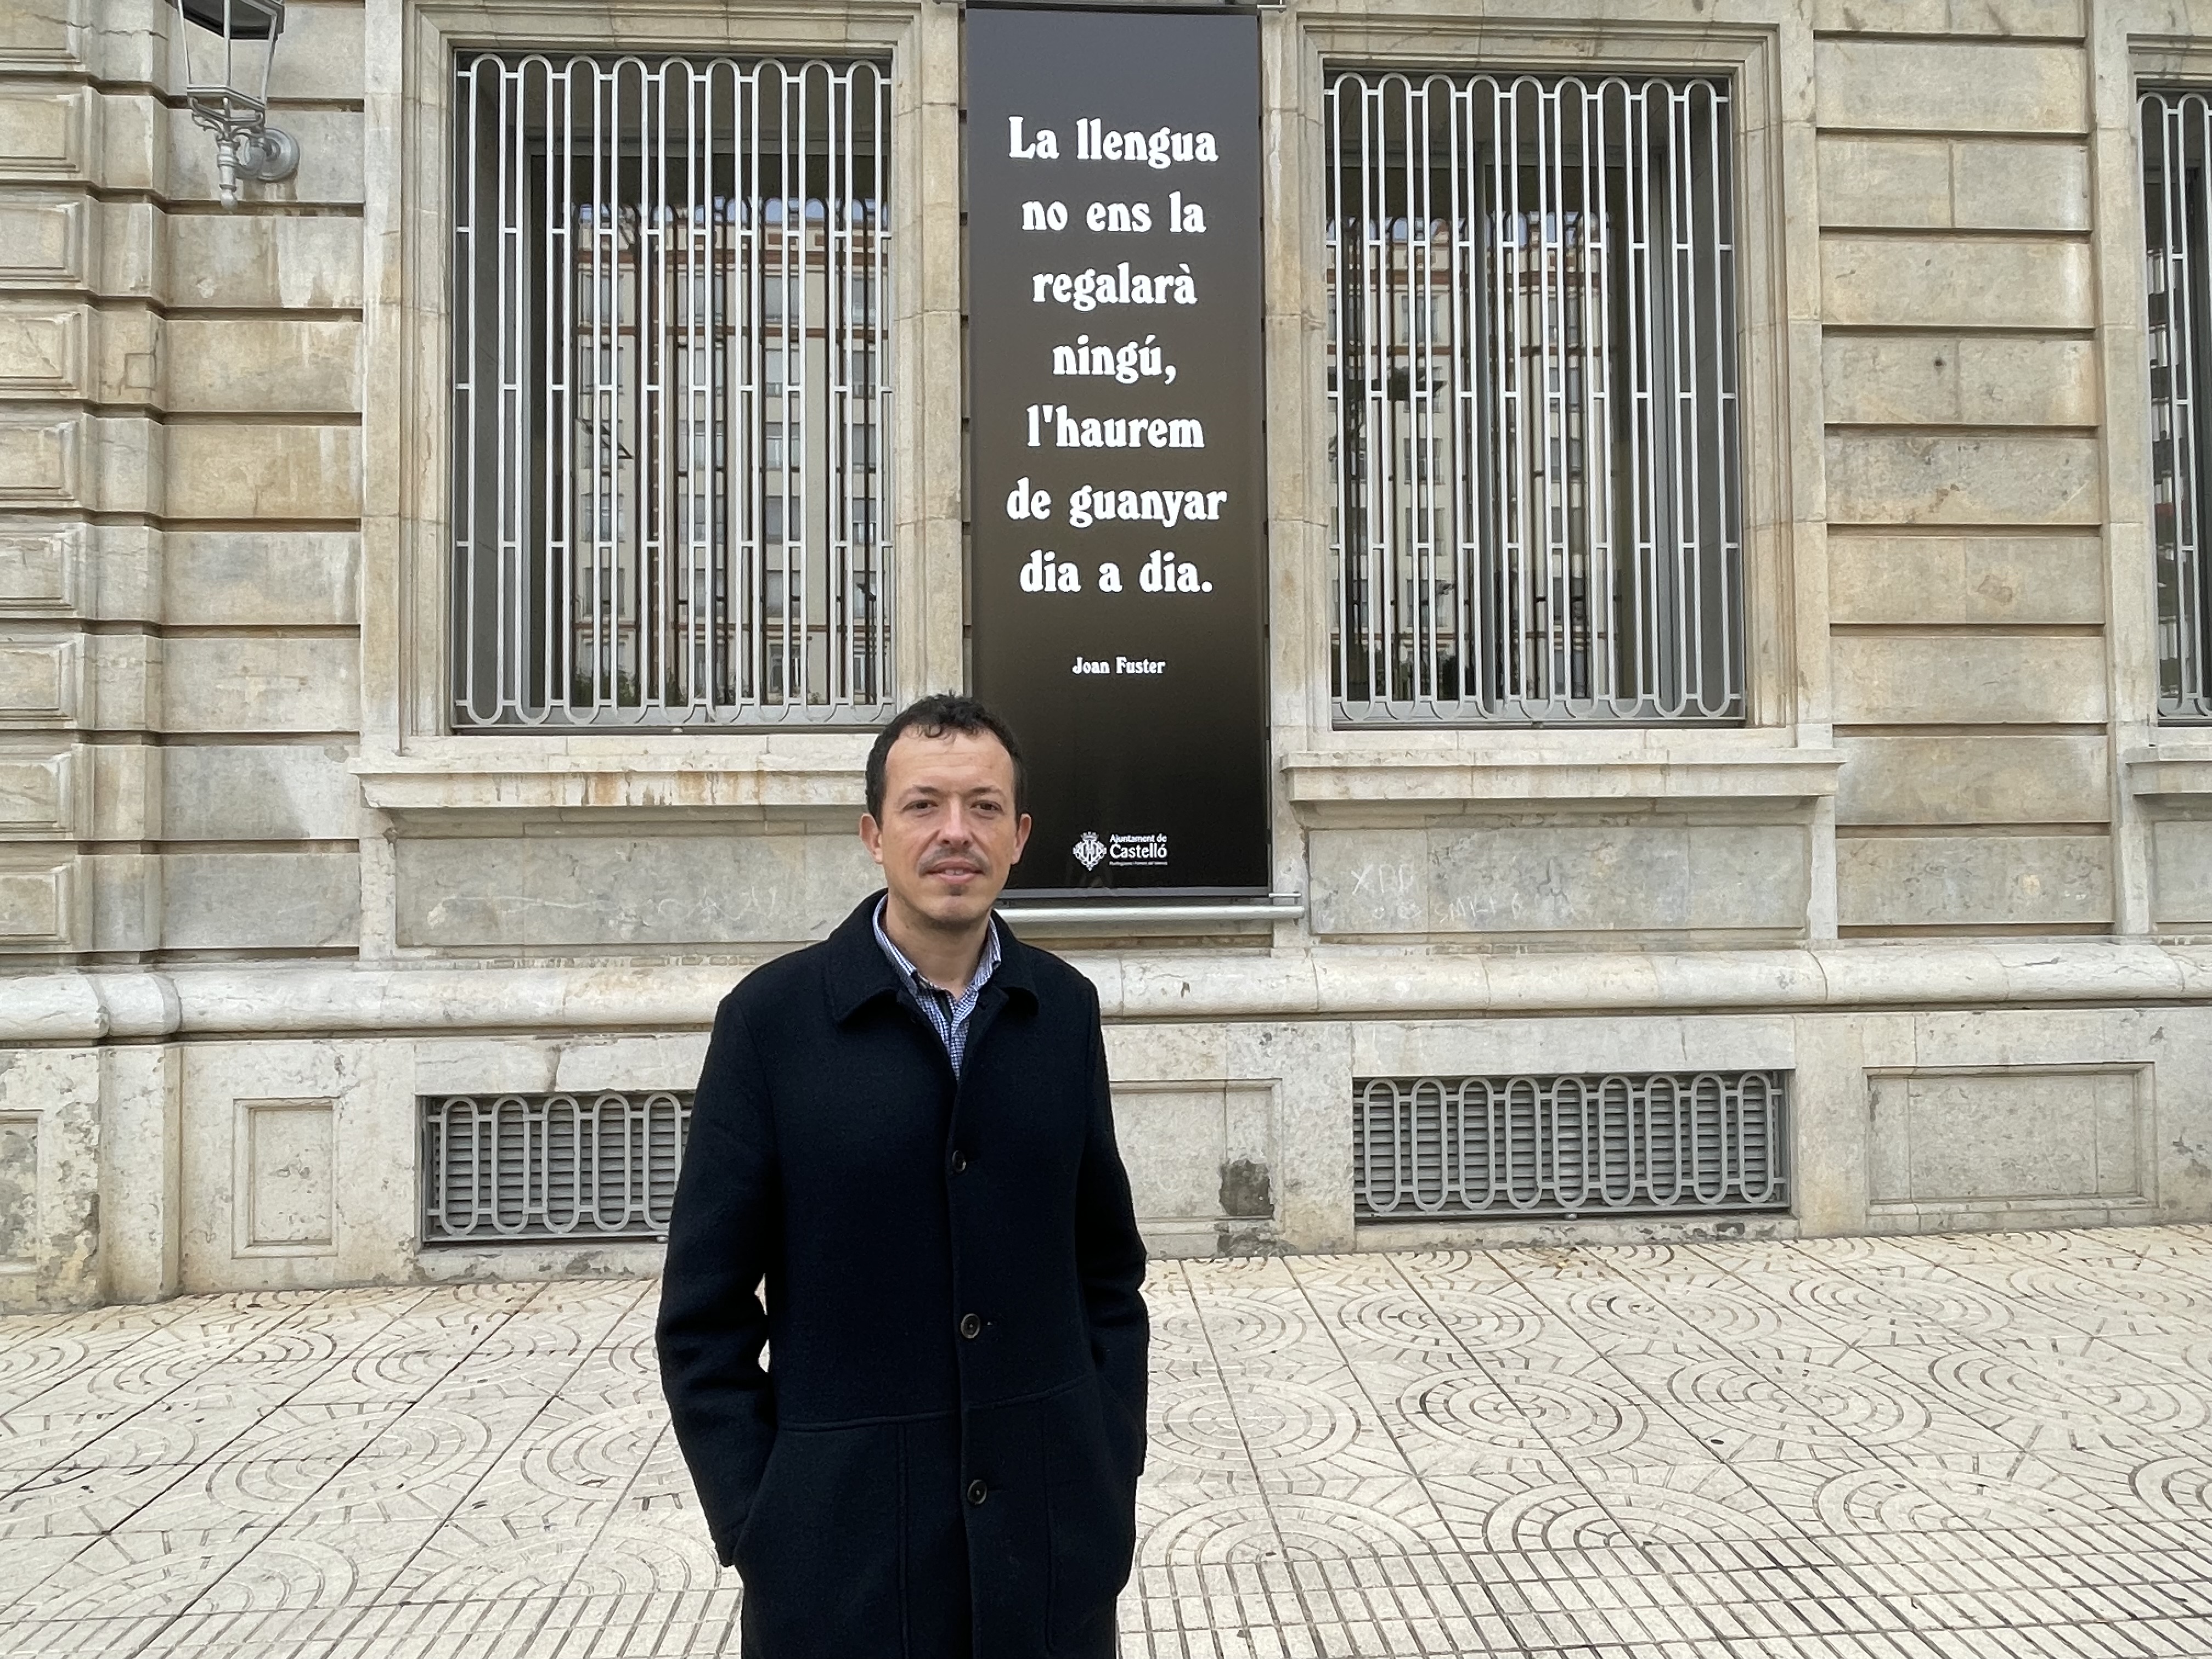 Citas del escritor valenciano se poder leer en plazas y calles para el fomento de la lengua y su uso social